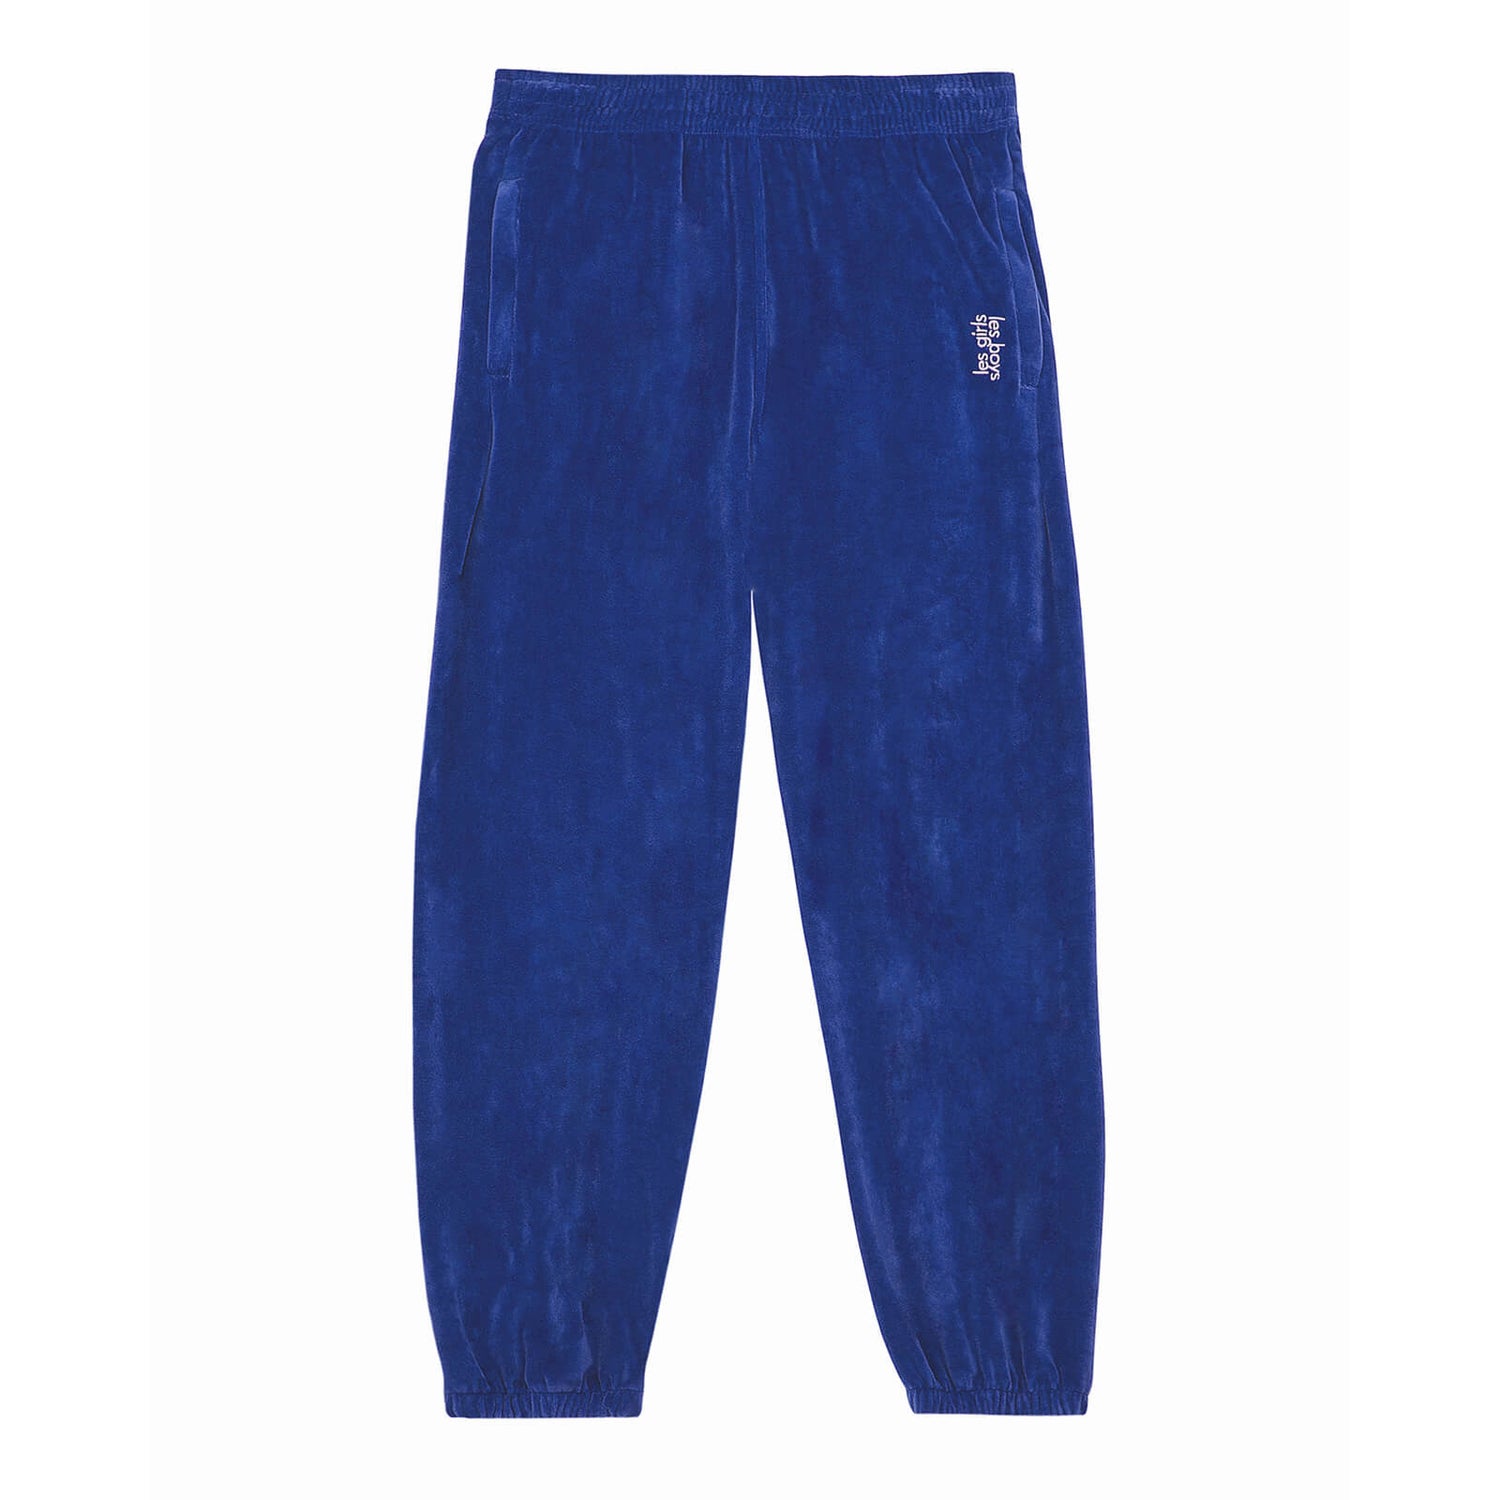 Les Girls Les Boys Women's Velour Sweats Loose Fit Joggers - Blue - XS